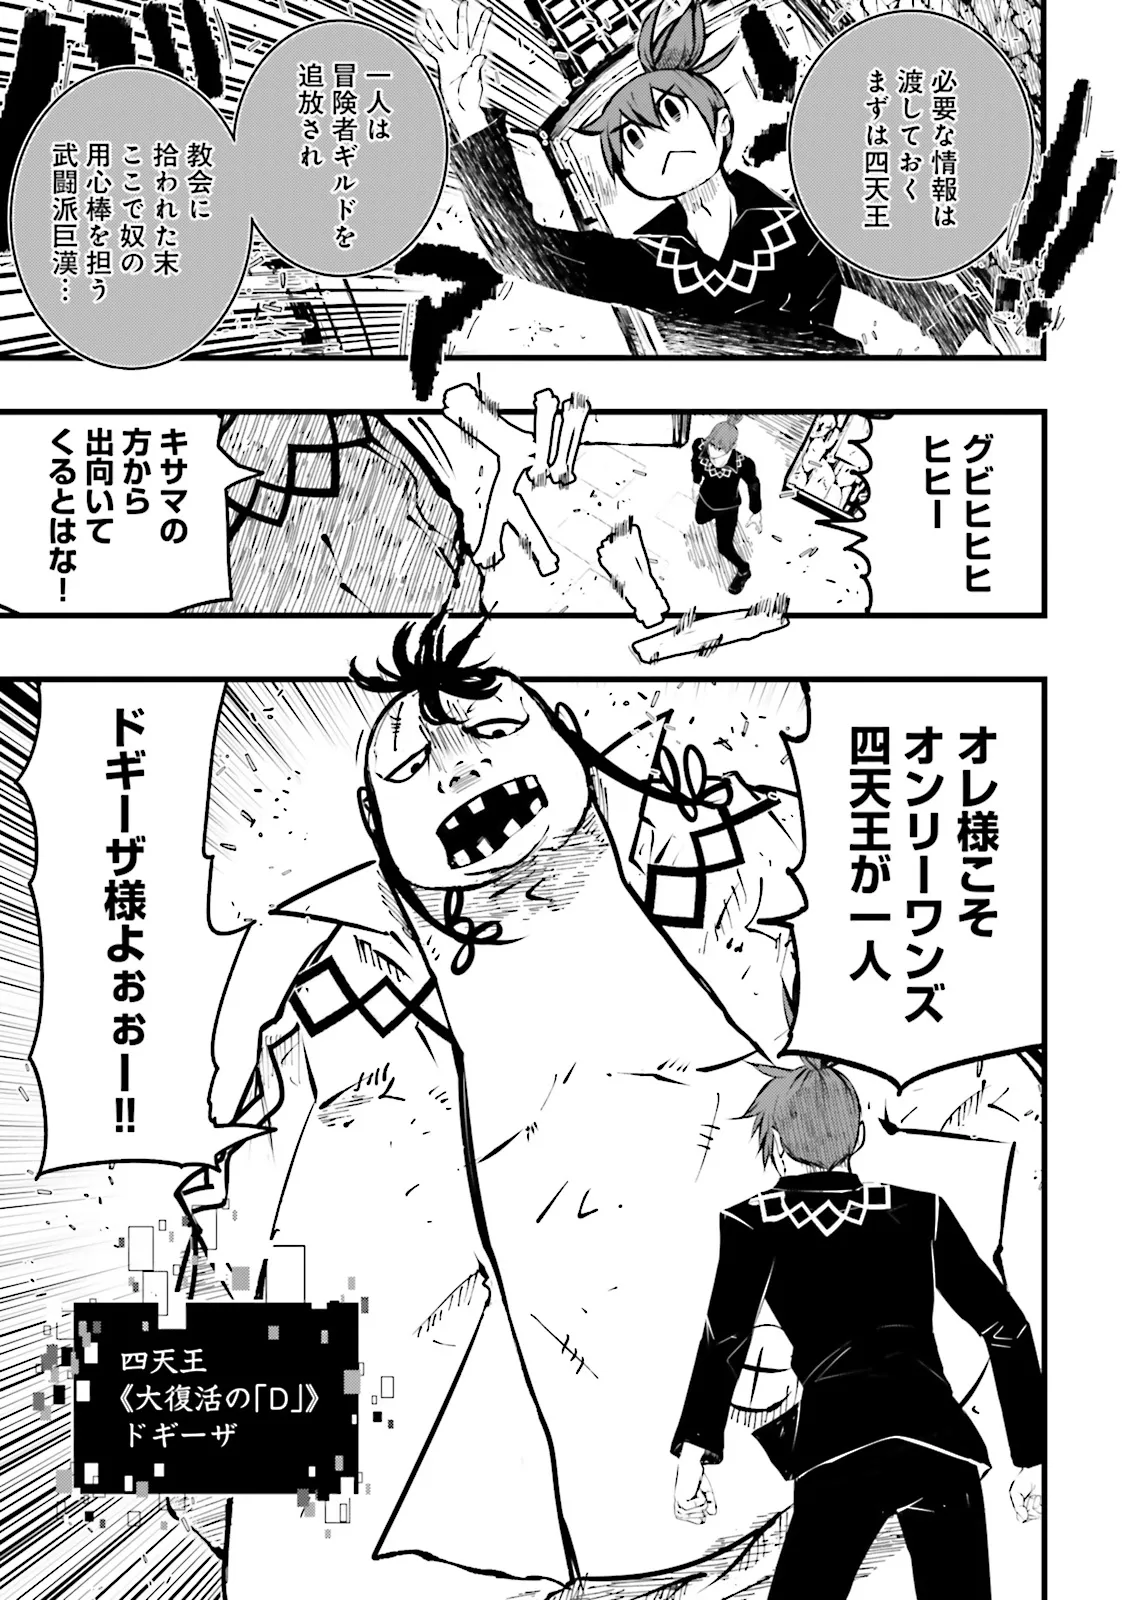 Sukiru Ga Nakereba Level wo Ageru ~ 99 Ga Kansuto No Sekai De Reberu 800 Man Kara Sutato ~ - Chapter 39.1 - Page 7